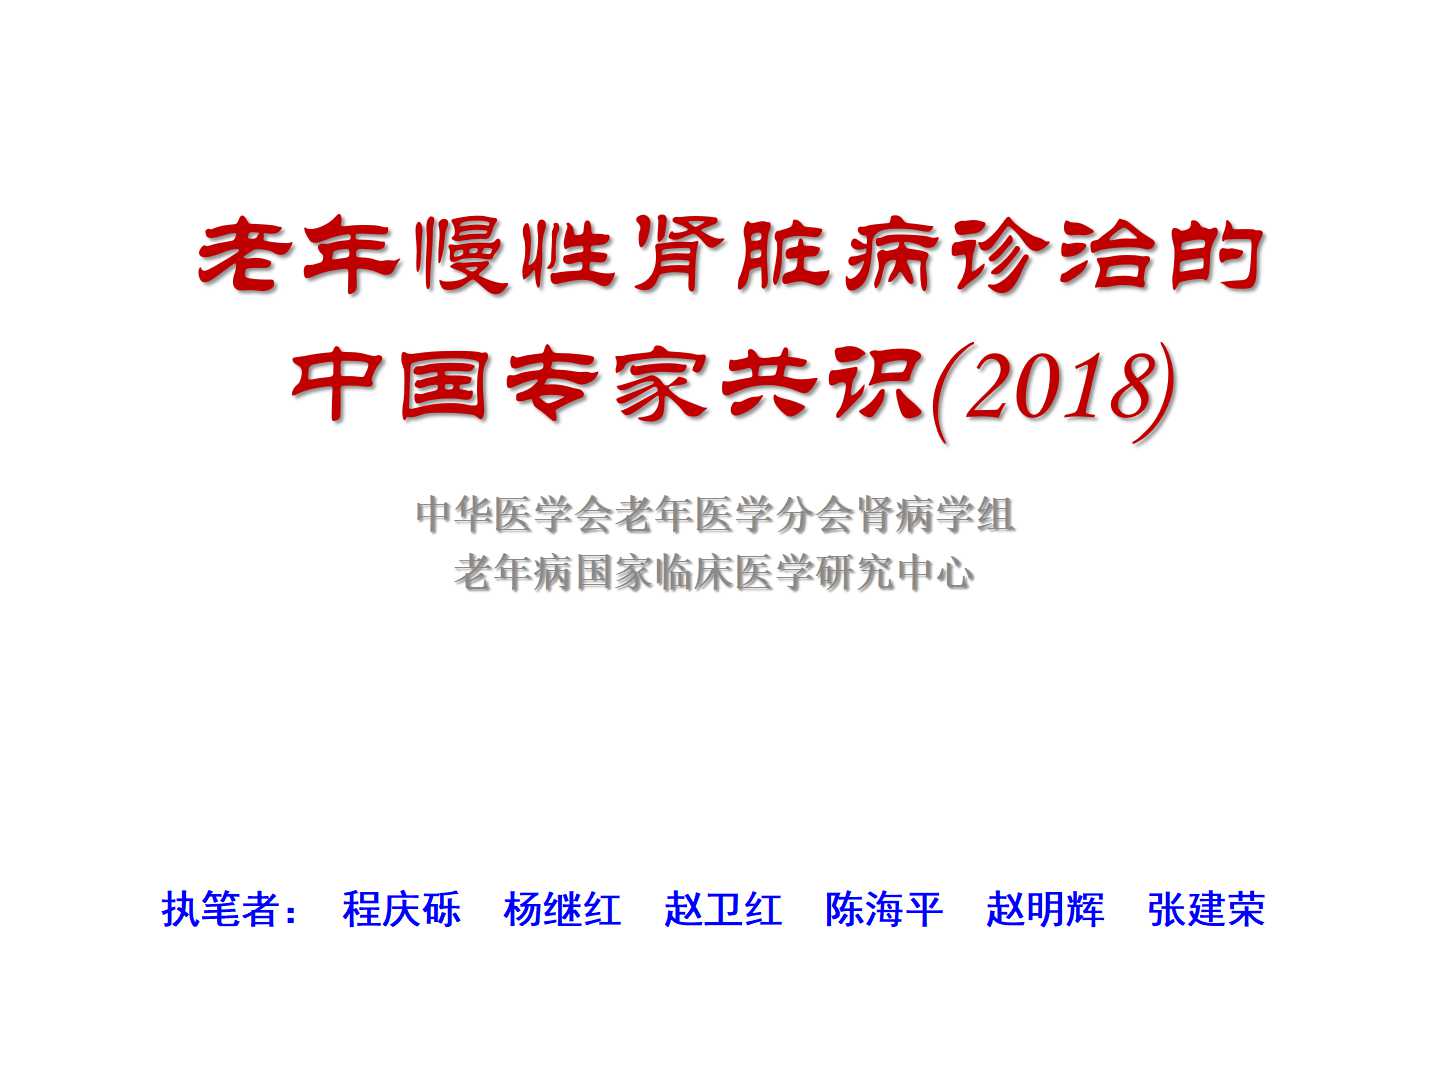 老年慢性肾脏病诊治的中国专家共识(2018)